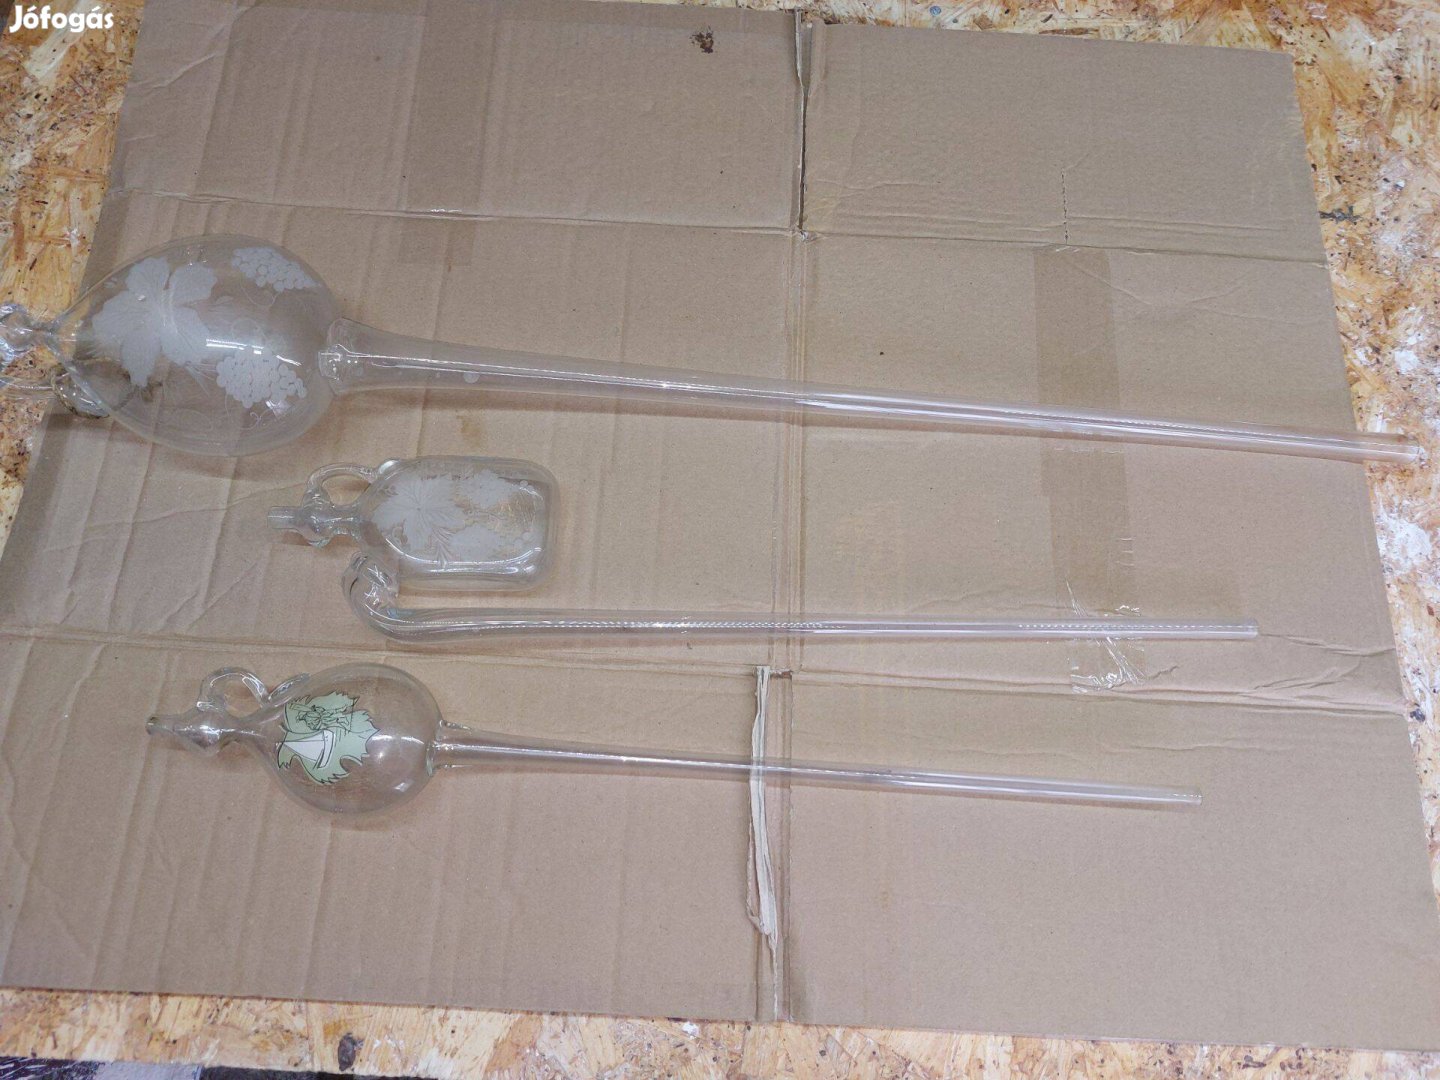 Üveg borlopó 3 fajta, 1 csomagban eladók